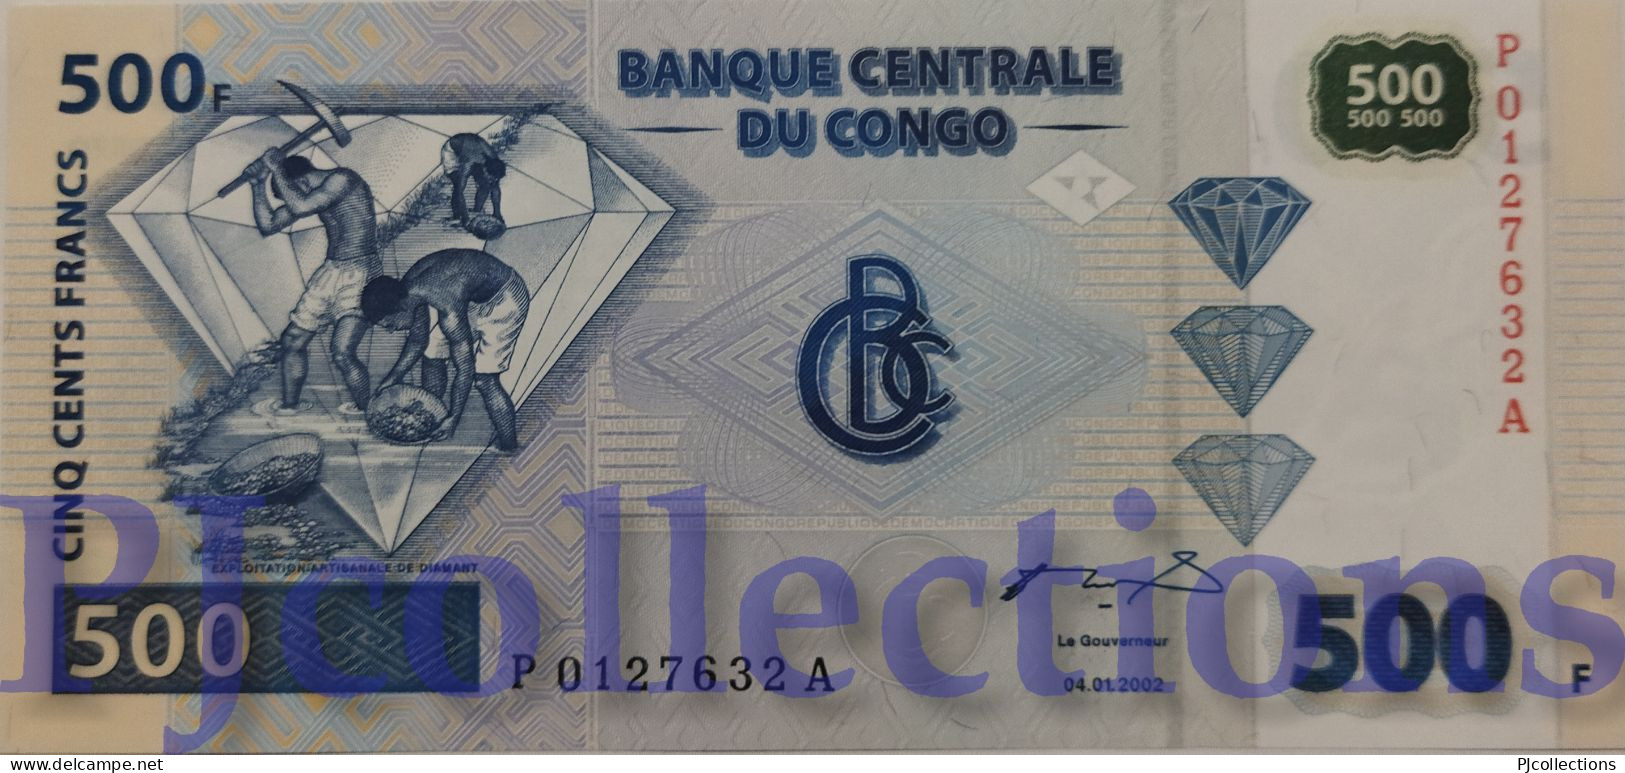 CONGO DEMOCRATIC REPUBLIC 500 FRANCS 2002 PICK 96 UNC - Democratic Republic Of The Congo & Zaire